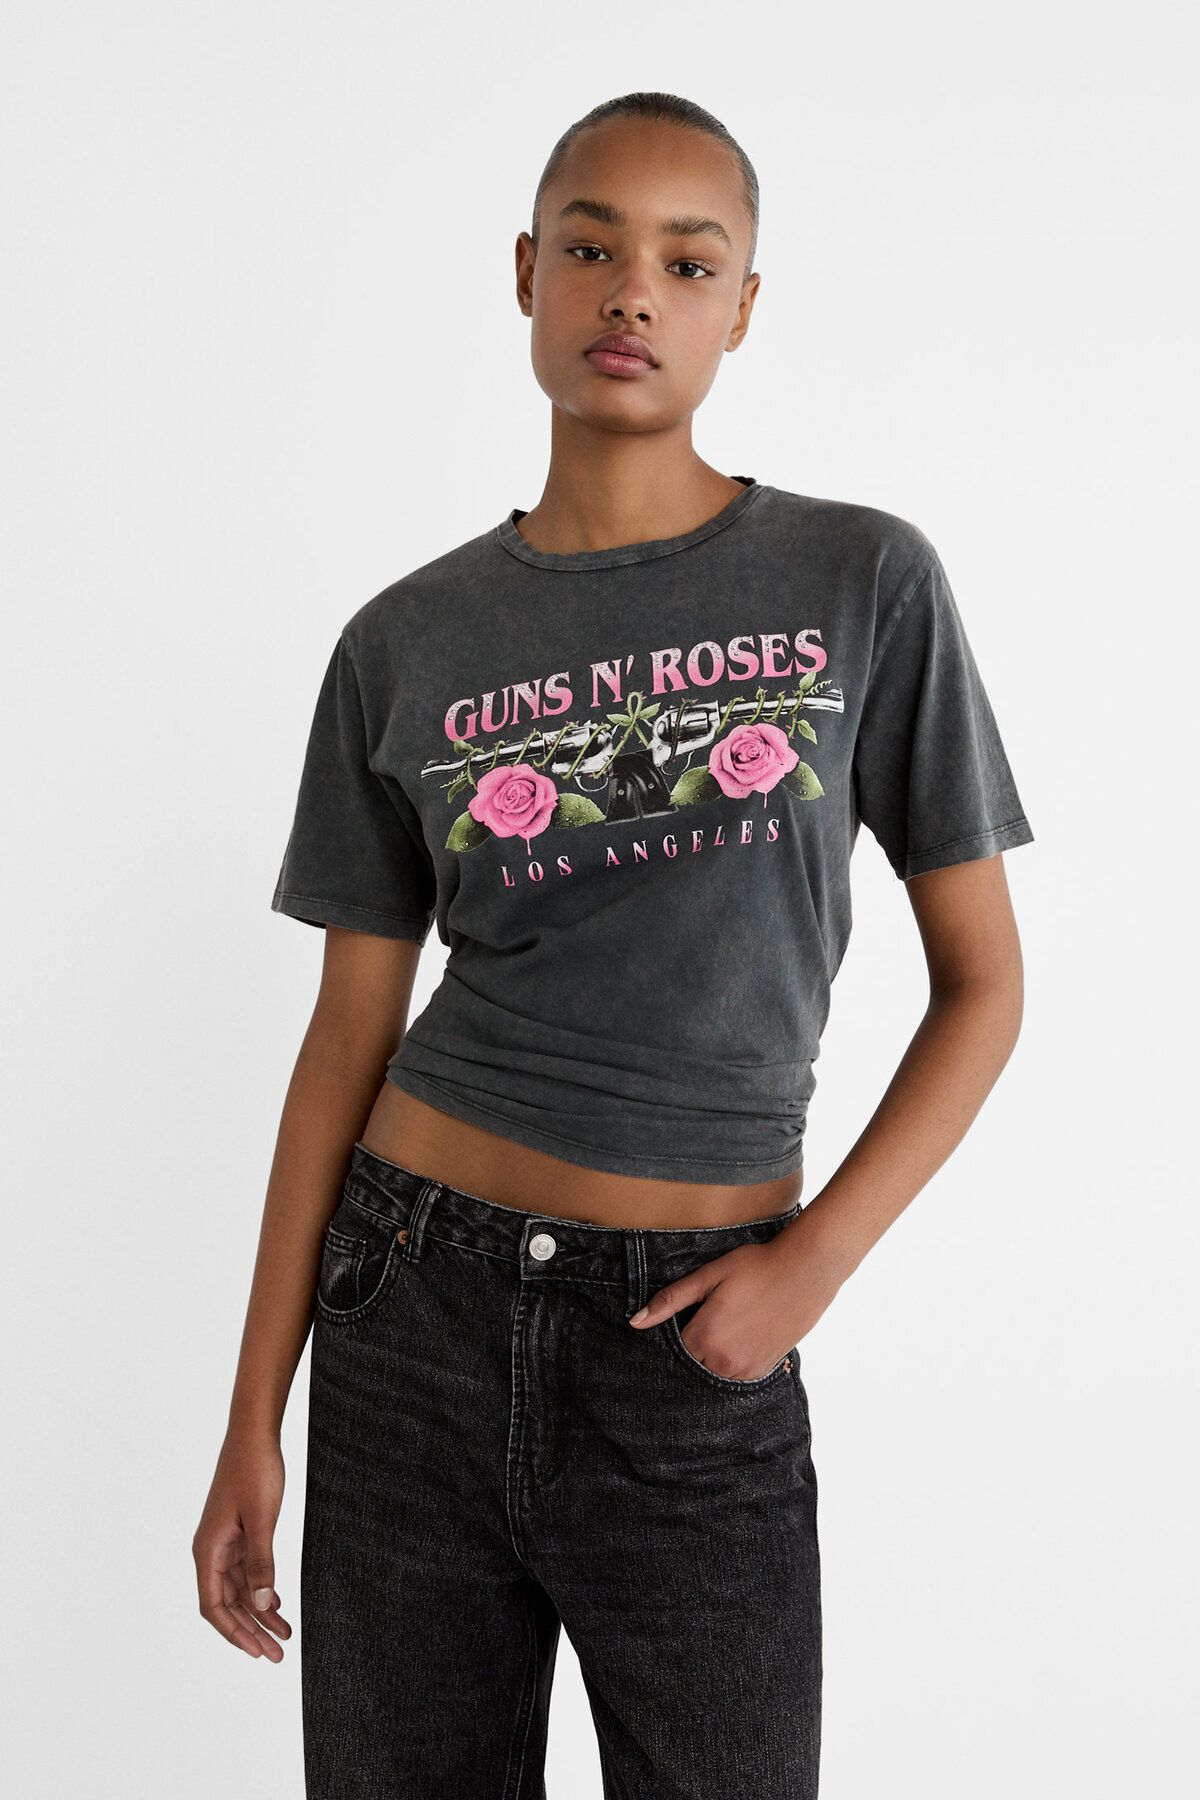 Stradivarius Guns N' Roses t-shirt